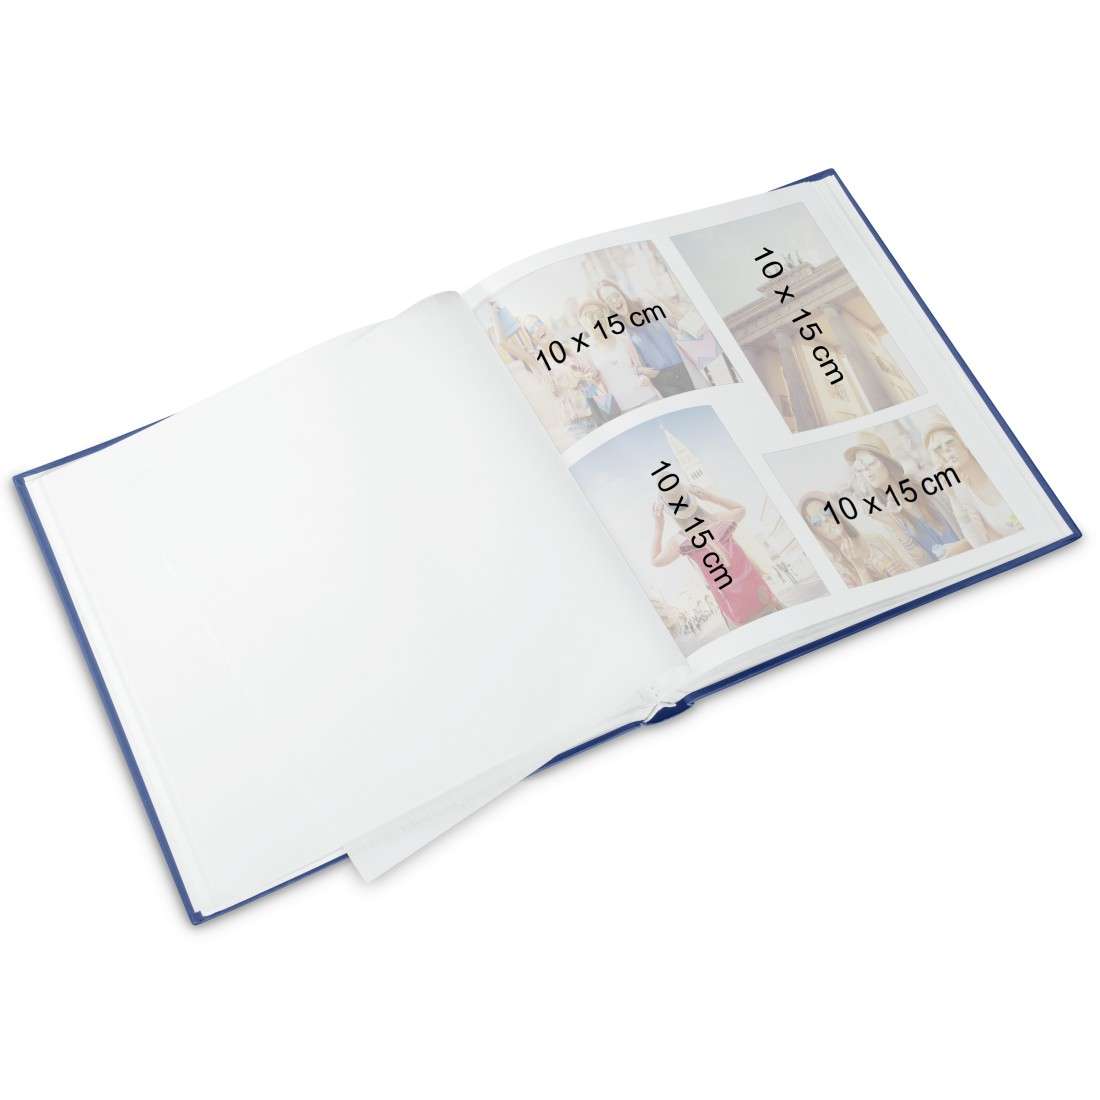 Buch-Album Bernd, 29x32 cm, 50 weiße Seiten